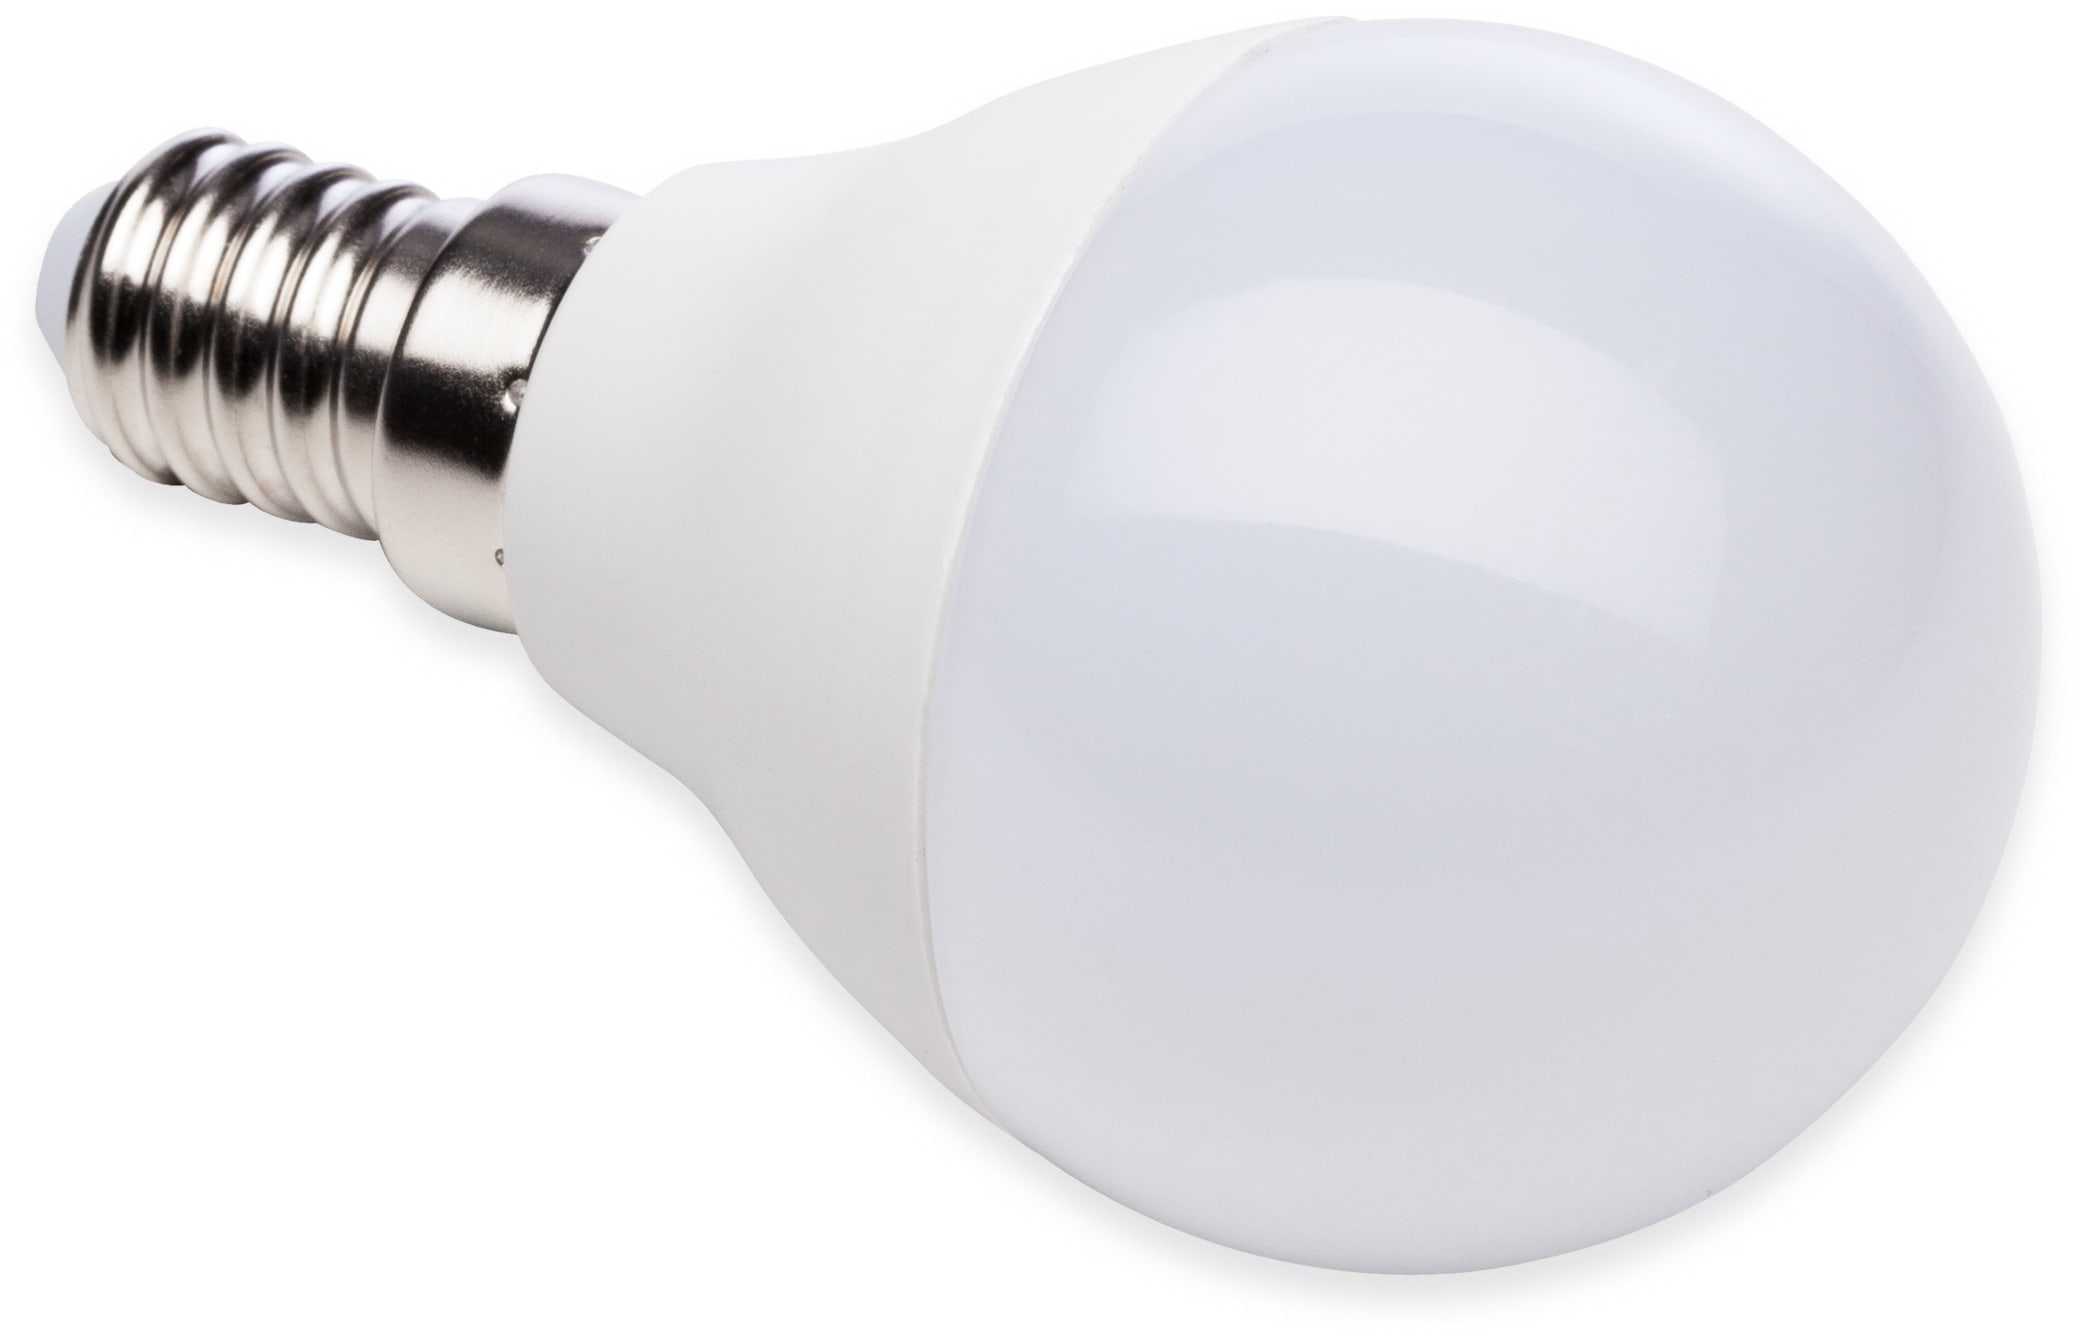 MÜLLER-LICHT LED-Lampe, Tropfenform, 400259, E14, EEK: F, 4,5W, 470 lm, 2700 K, matt, 4 Stück